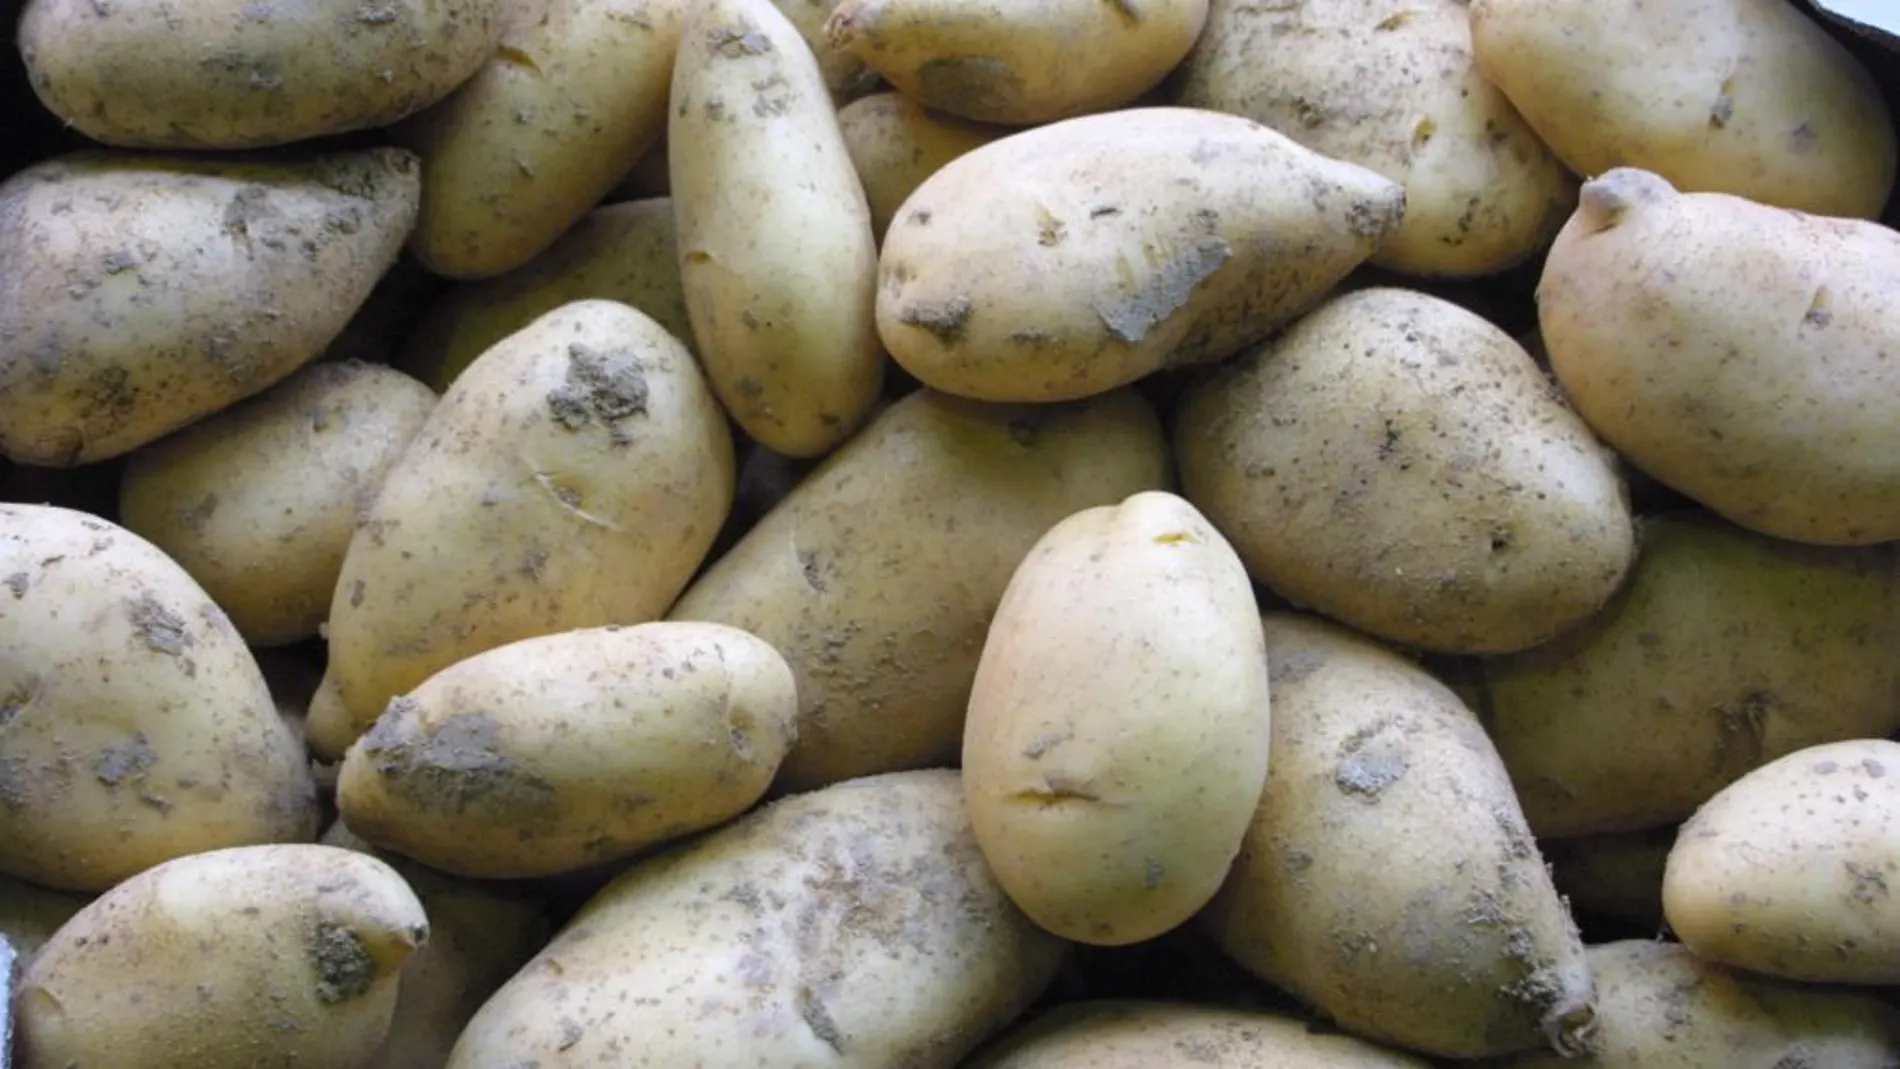 Las patatas de estación son las más habituales en este época porque se recogen entre junio y finales de verano en el momento justo de maduración.